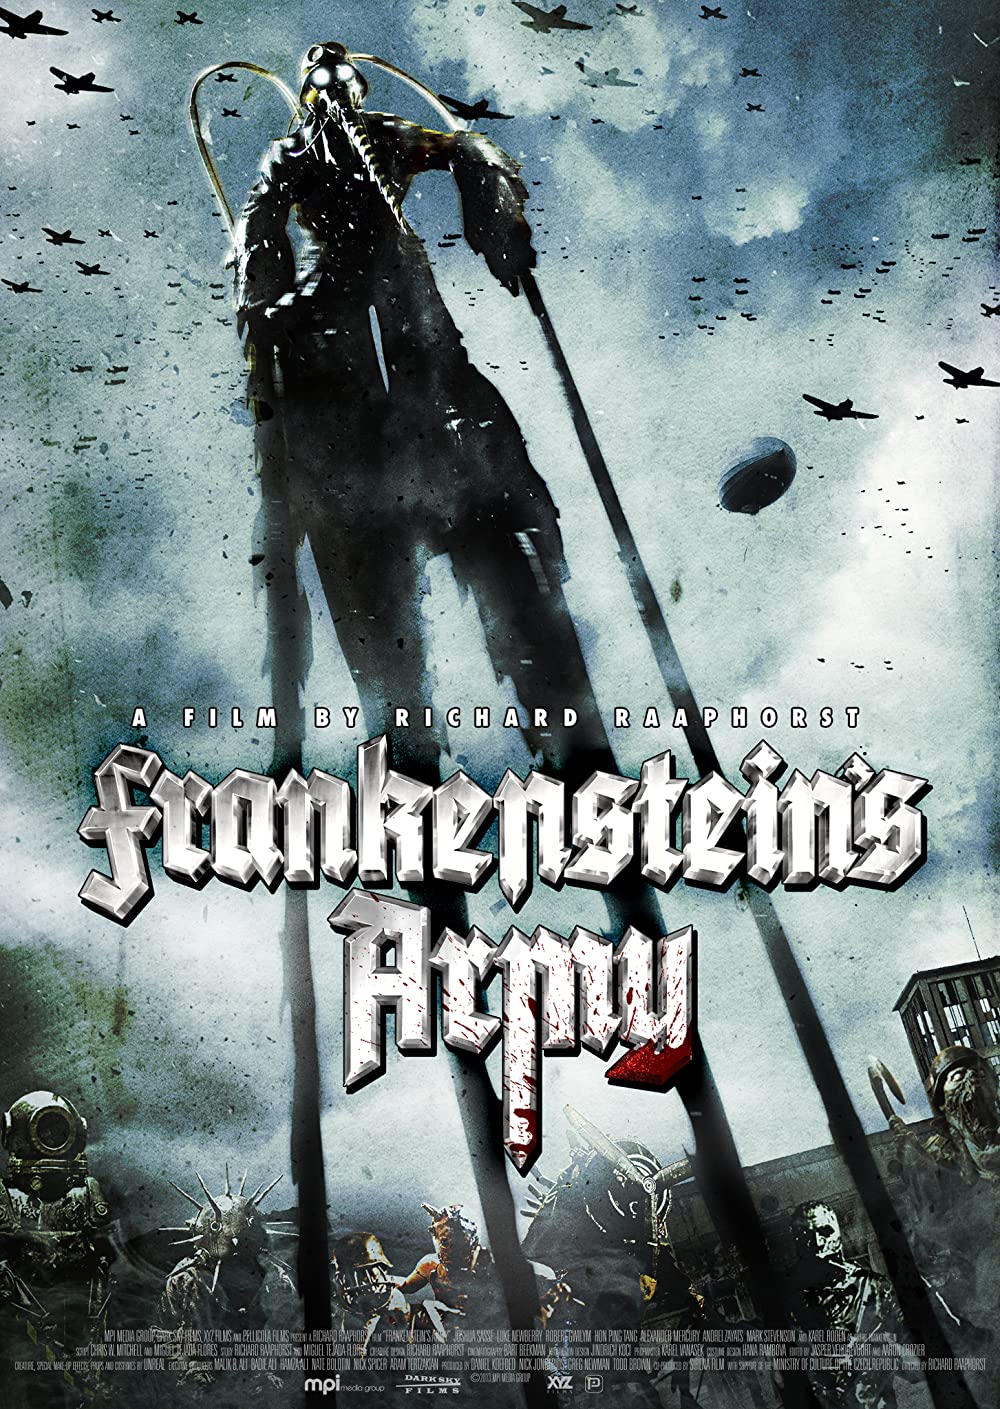 ดูหนัง Frankensteins Army (2013) [ซับไทย]